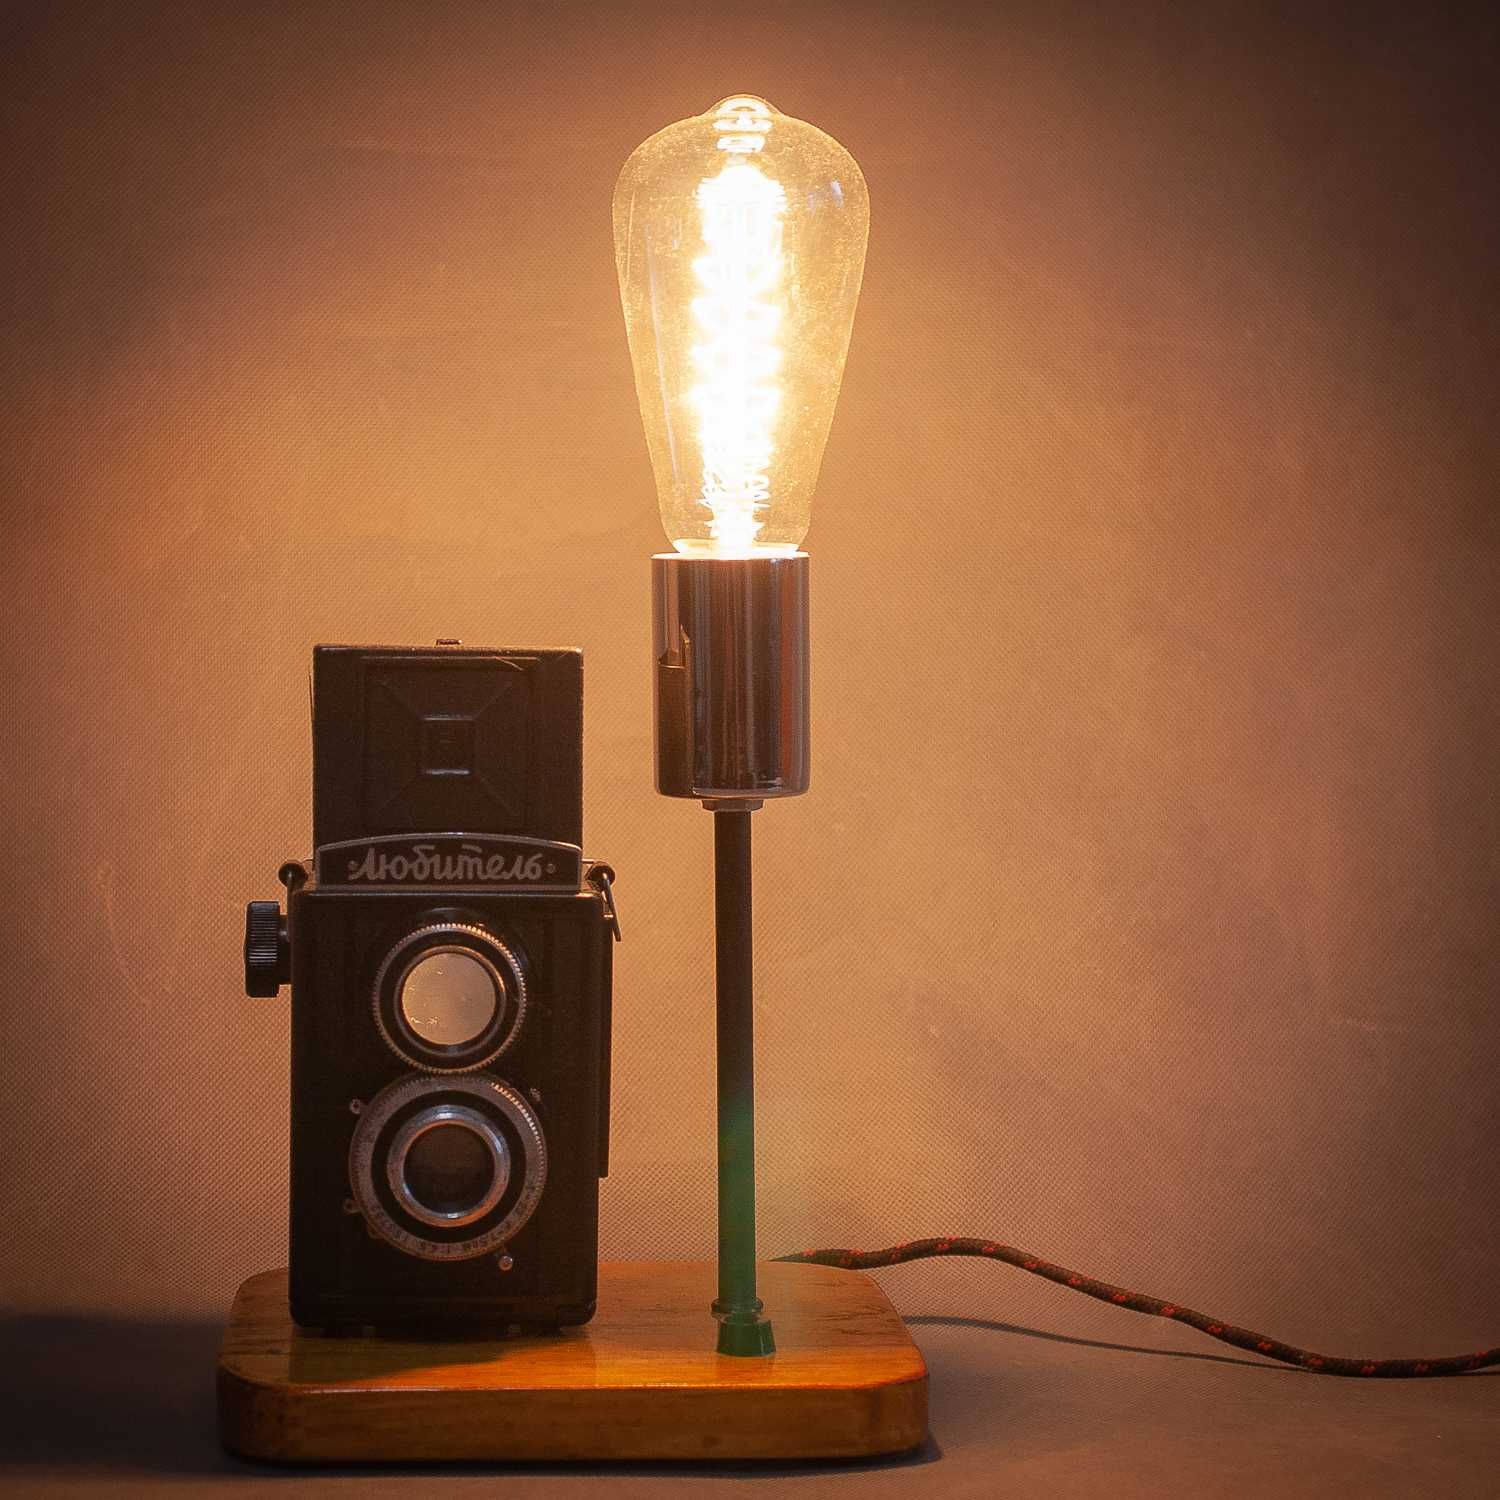 Оригинальный настольный светильник для дома.